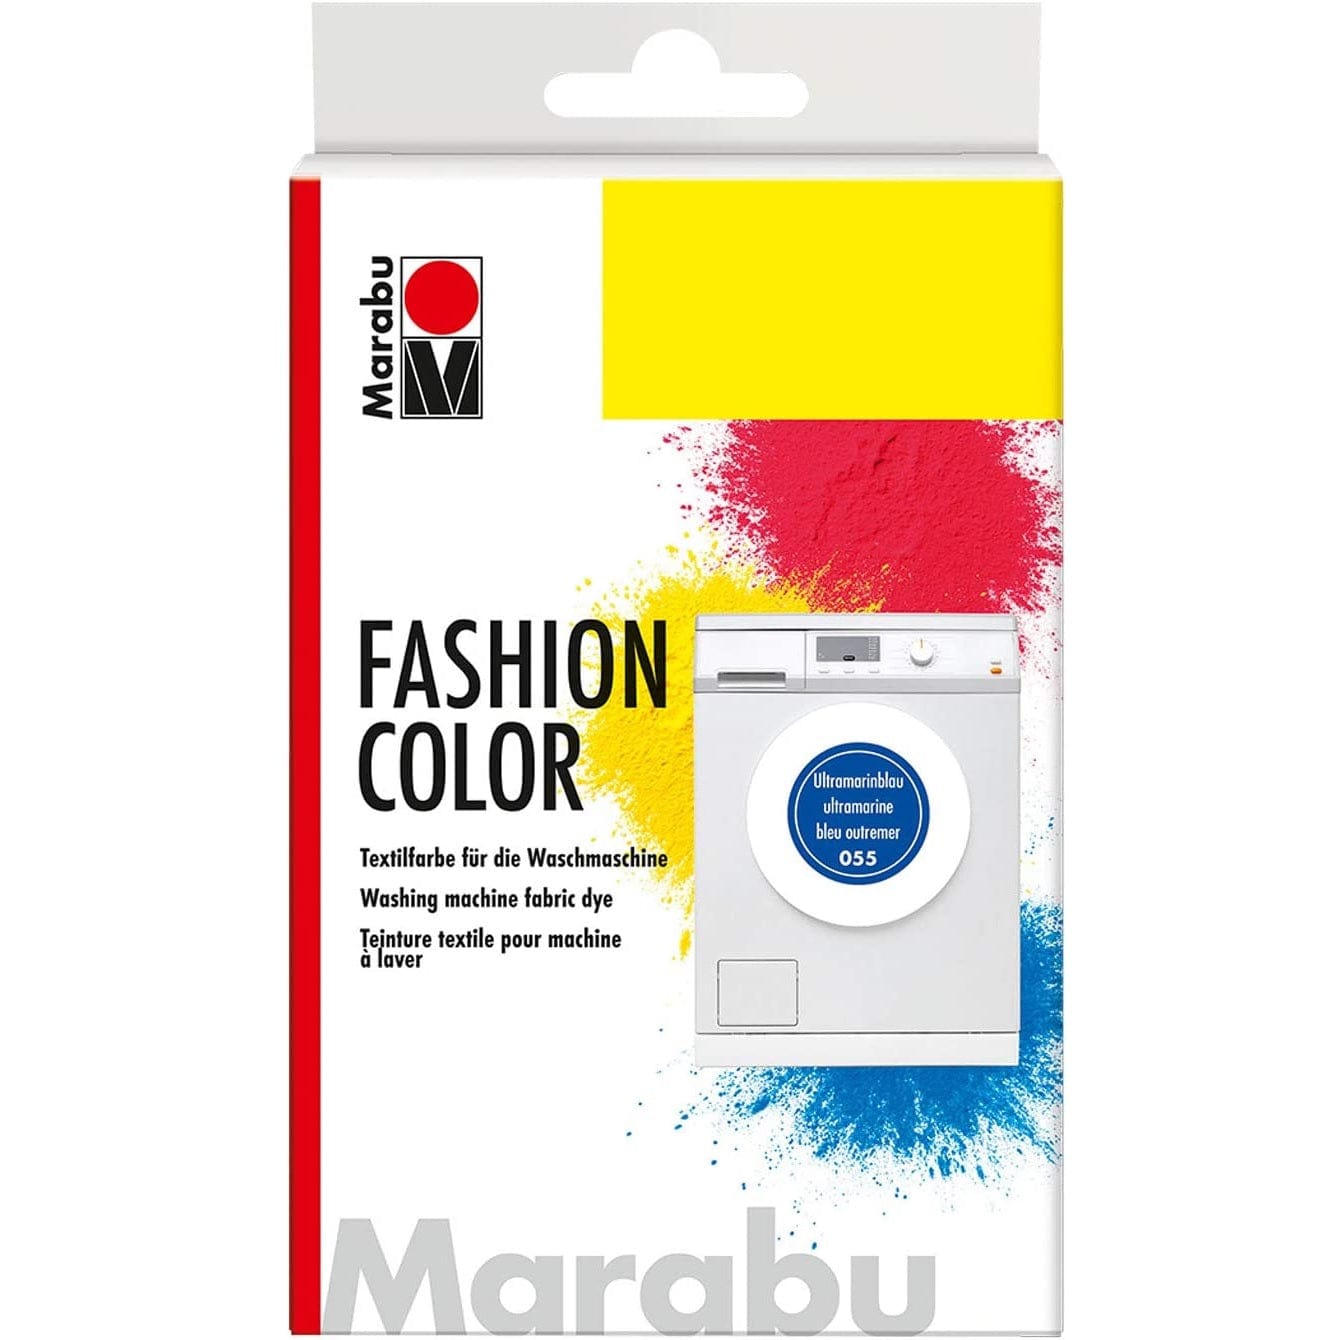 Marabu Toys Marabu Fashion Color, 055 Dark Ultramarine